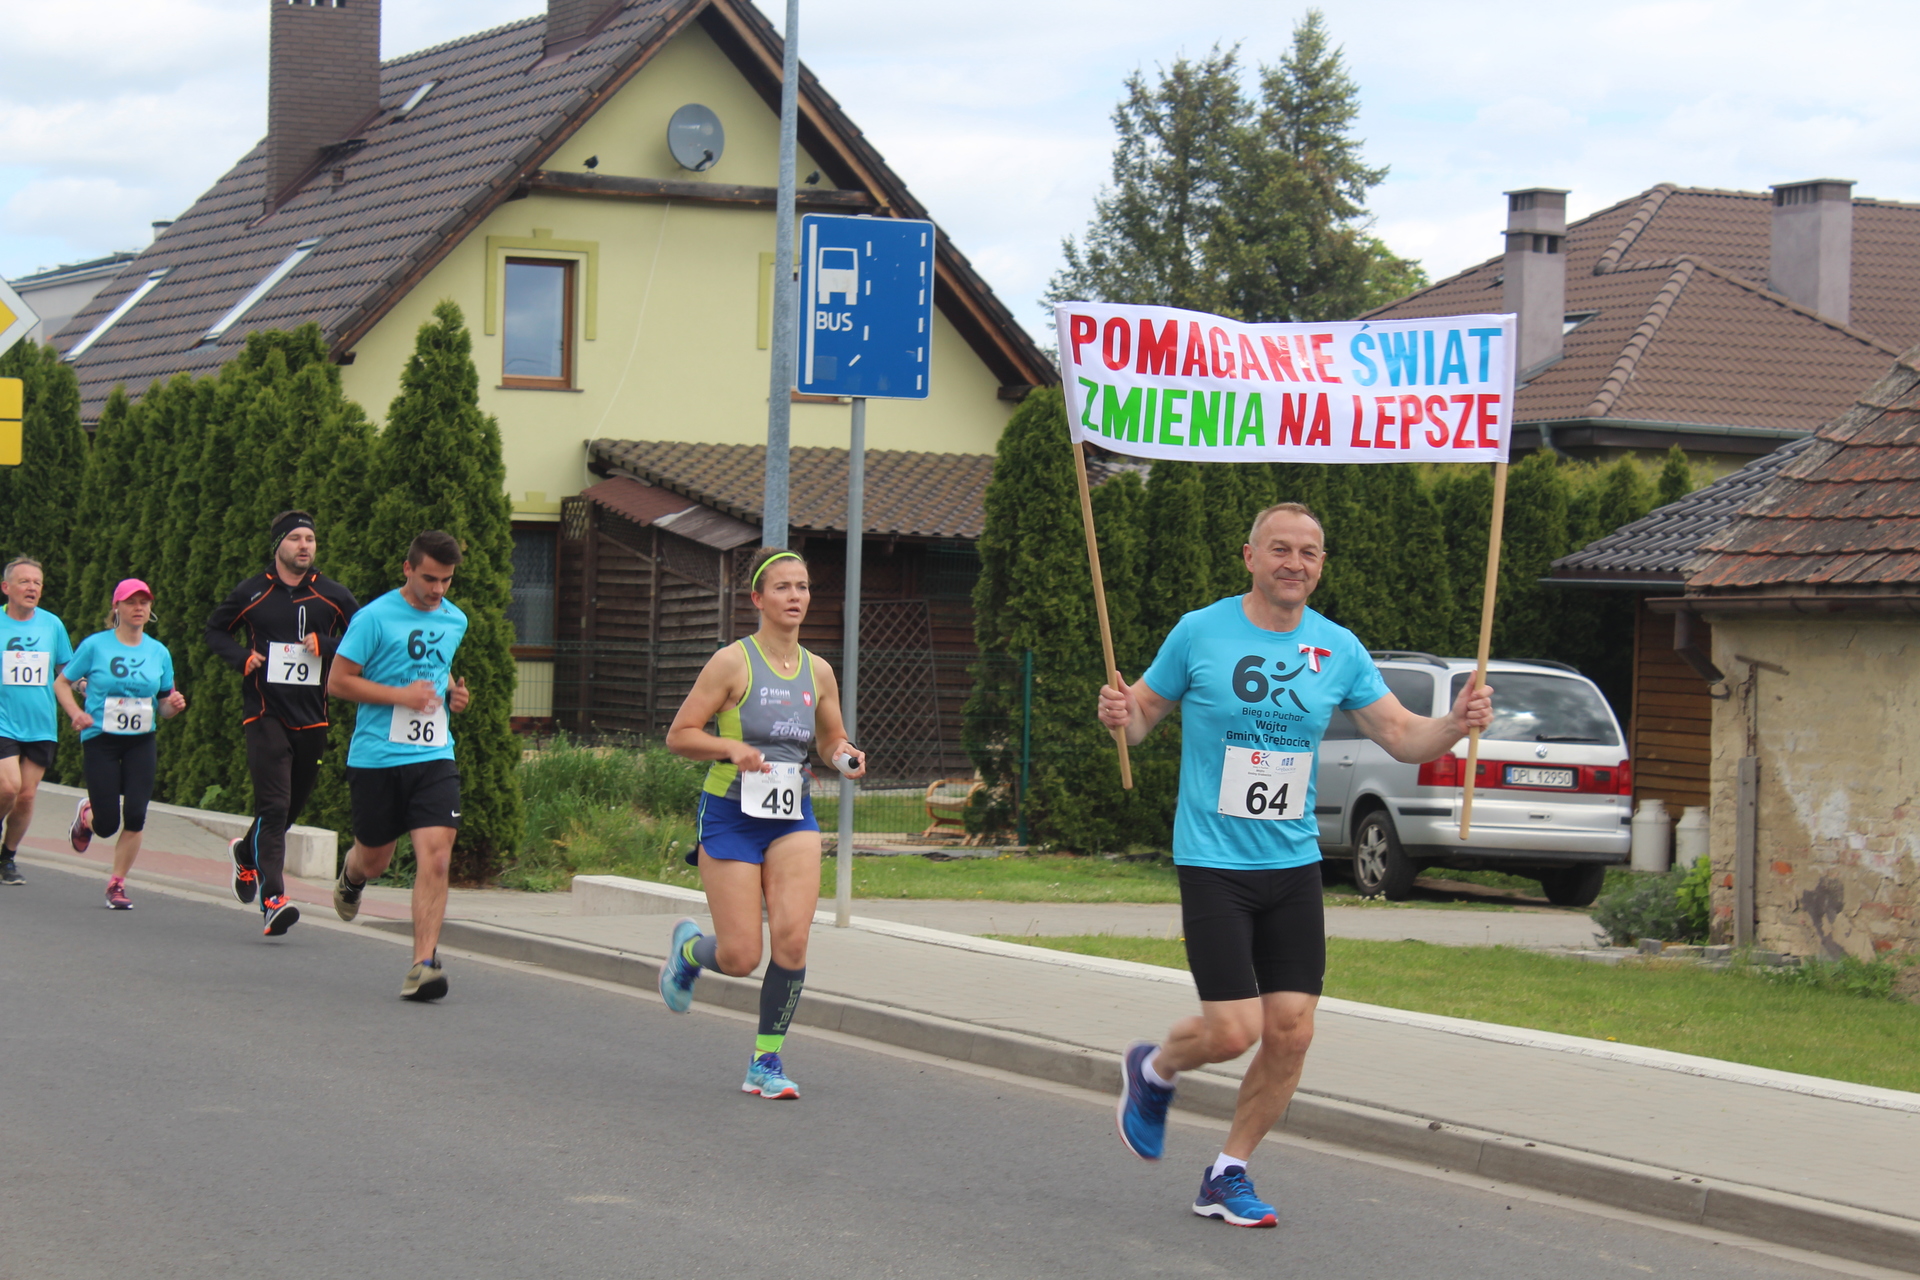 Biegli po puchar wójta, pomagając Michałkowi (FOTO)